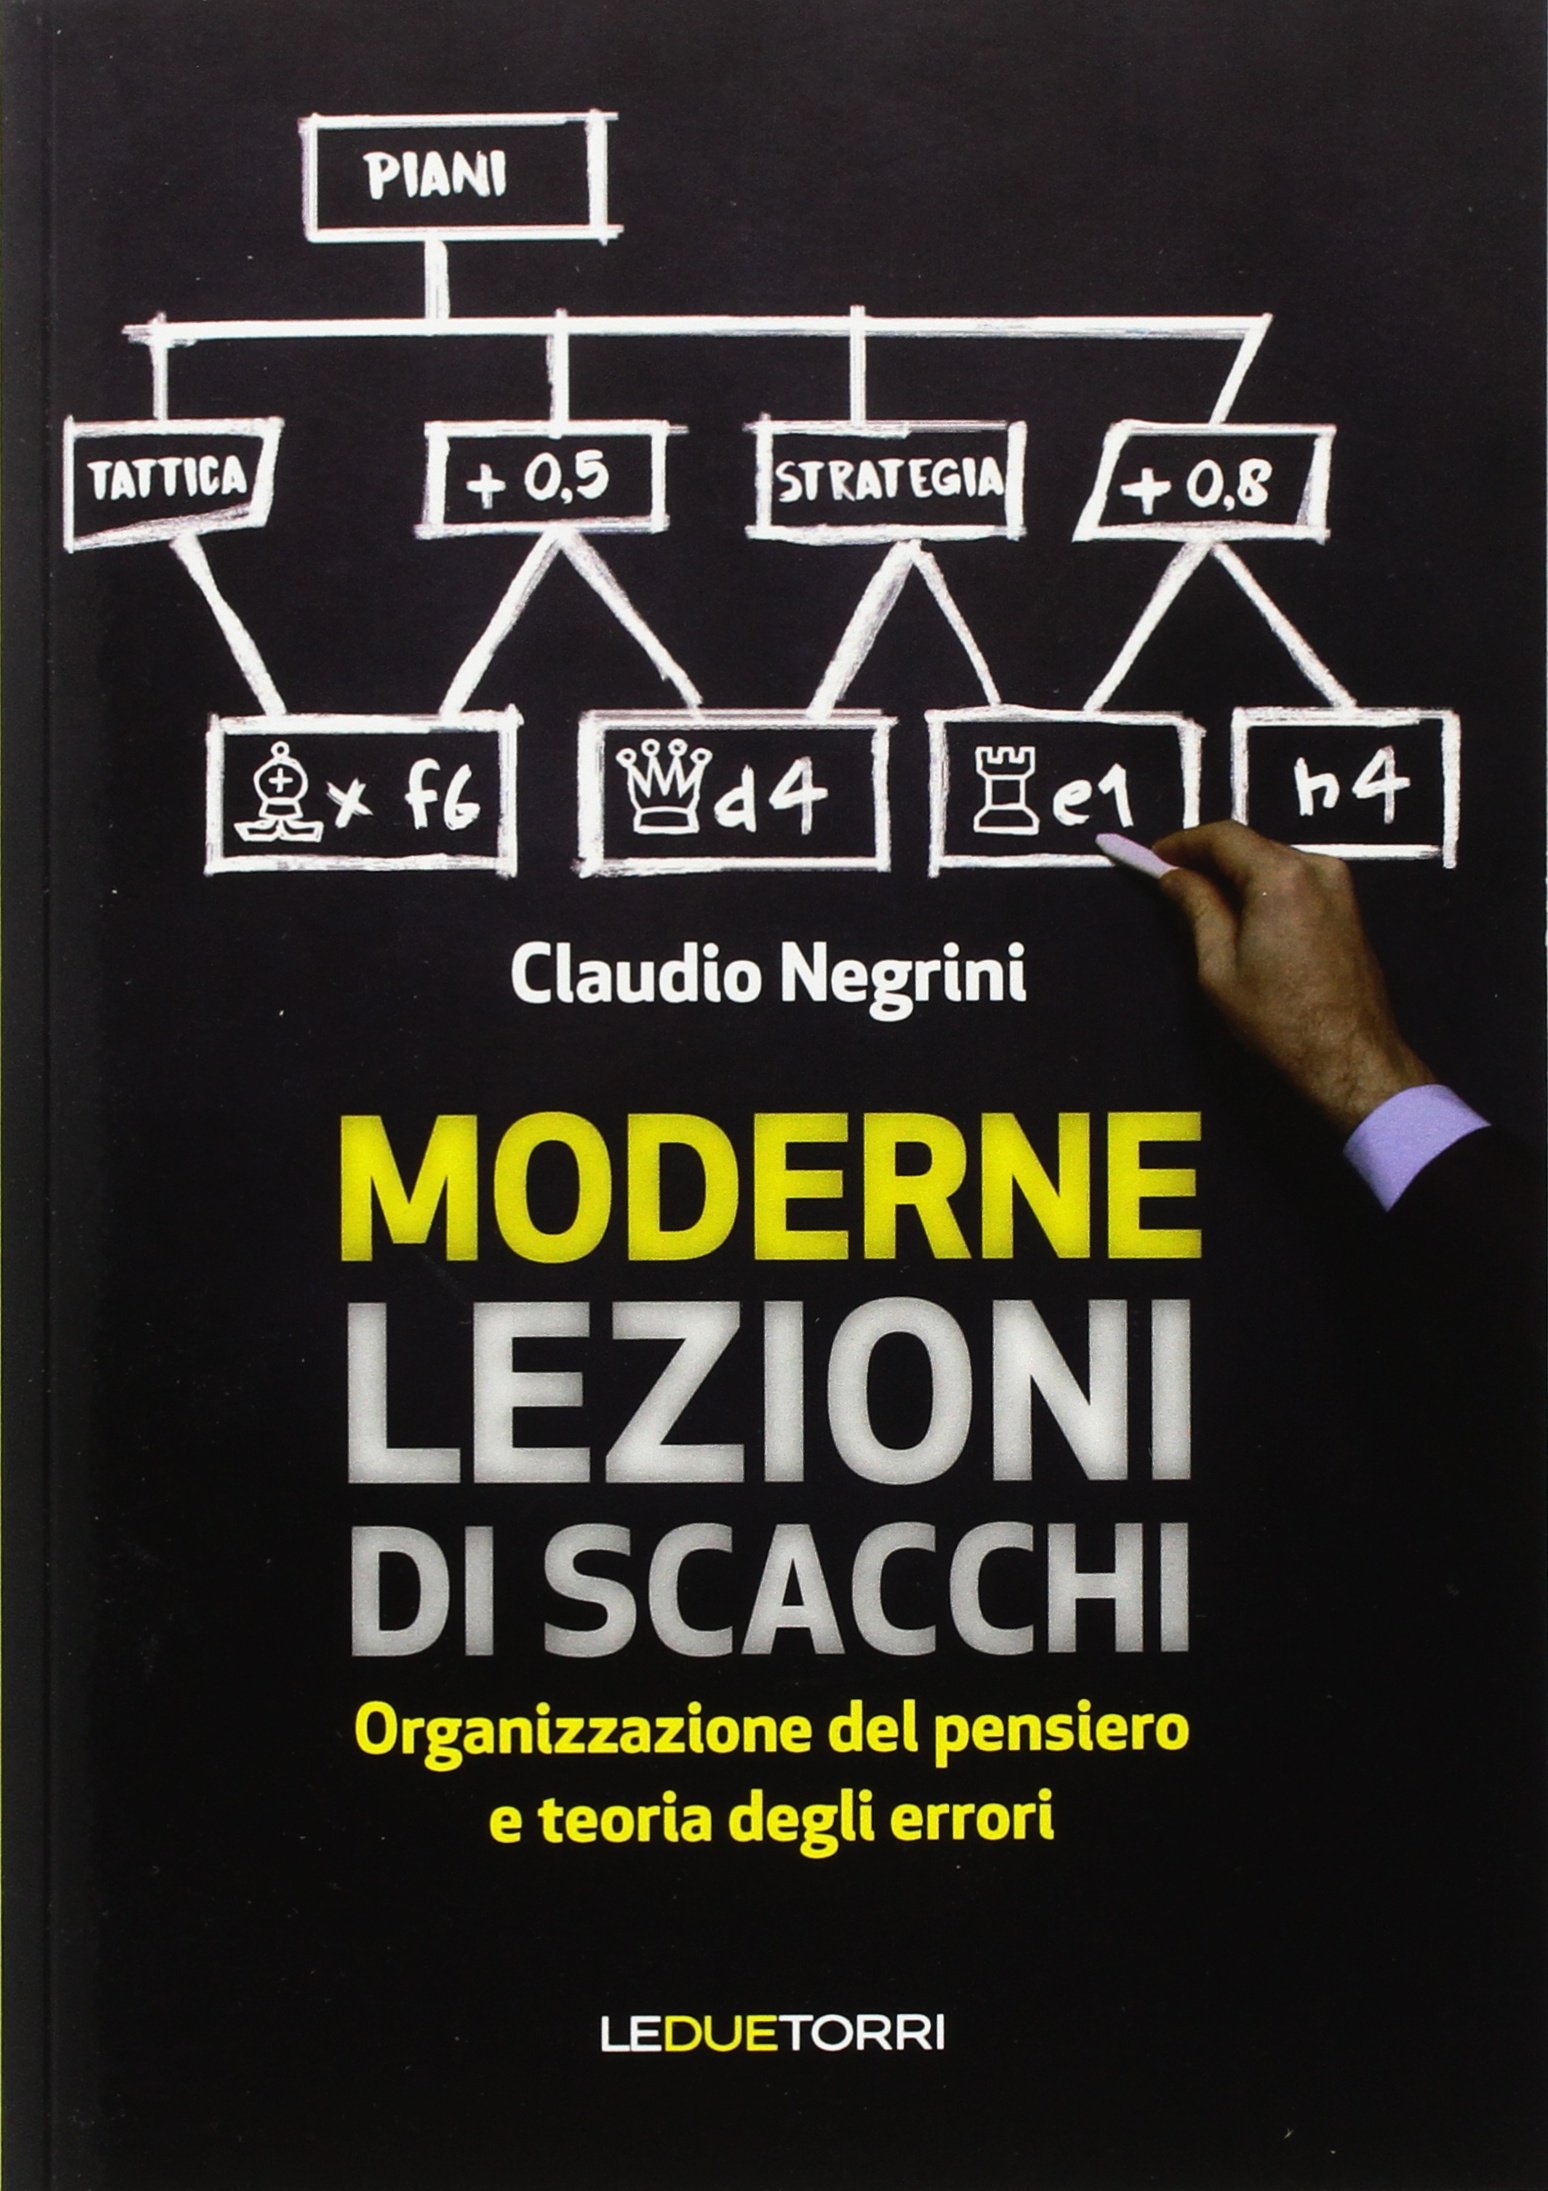 Claudio Negrini: Moderne lezioni di scacchi